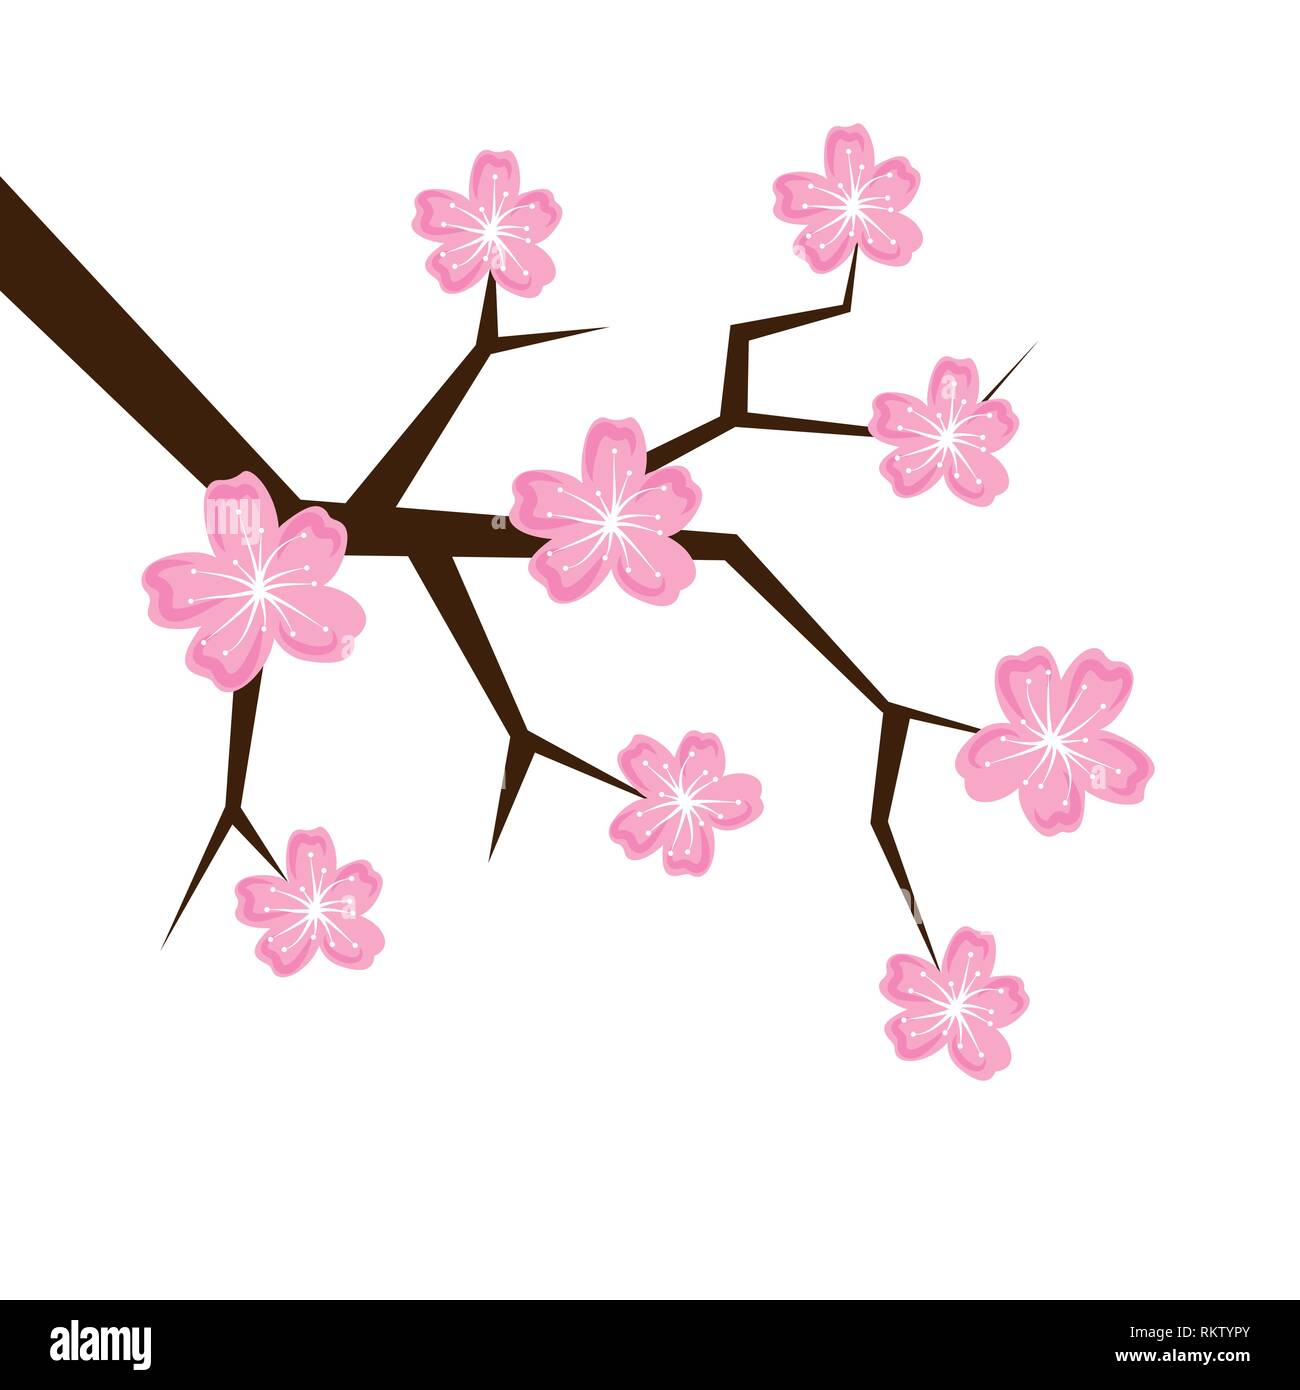 Cerise printemps fleurs pétales rose isolé sur un fond blanc vector illustration EPS10 Illustration de Vecteur